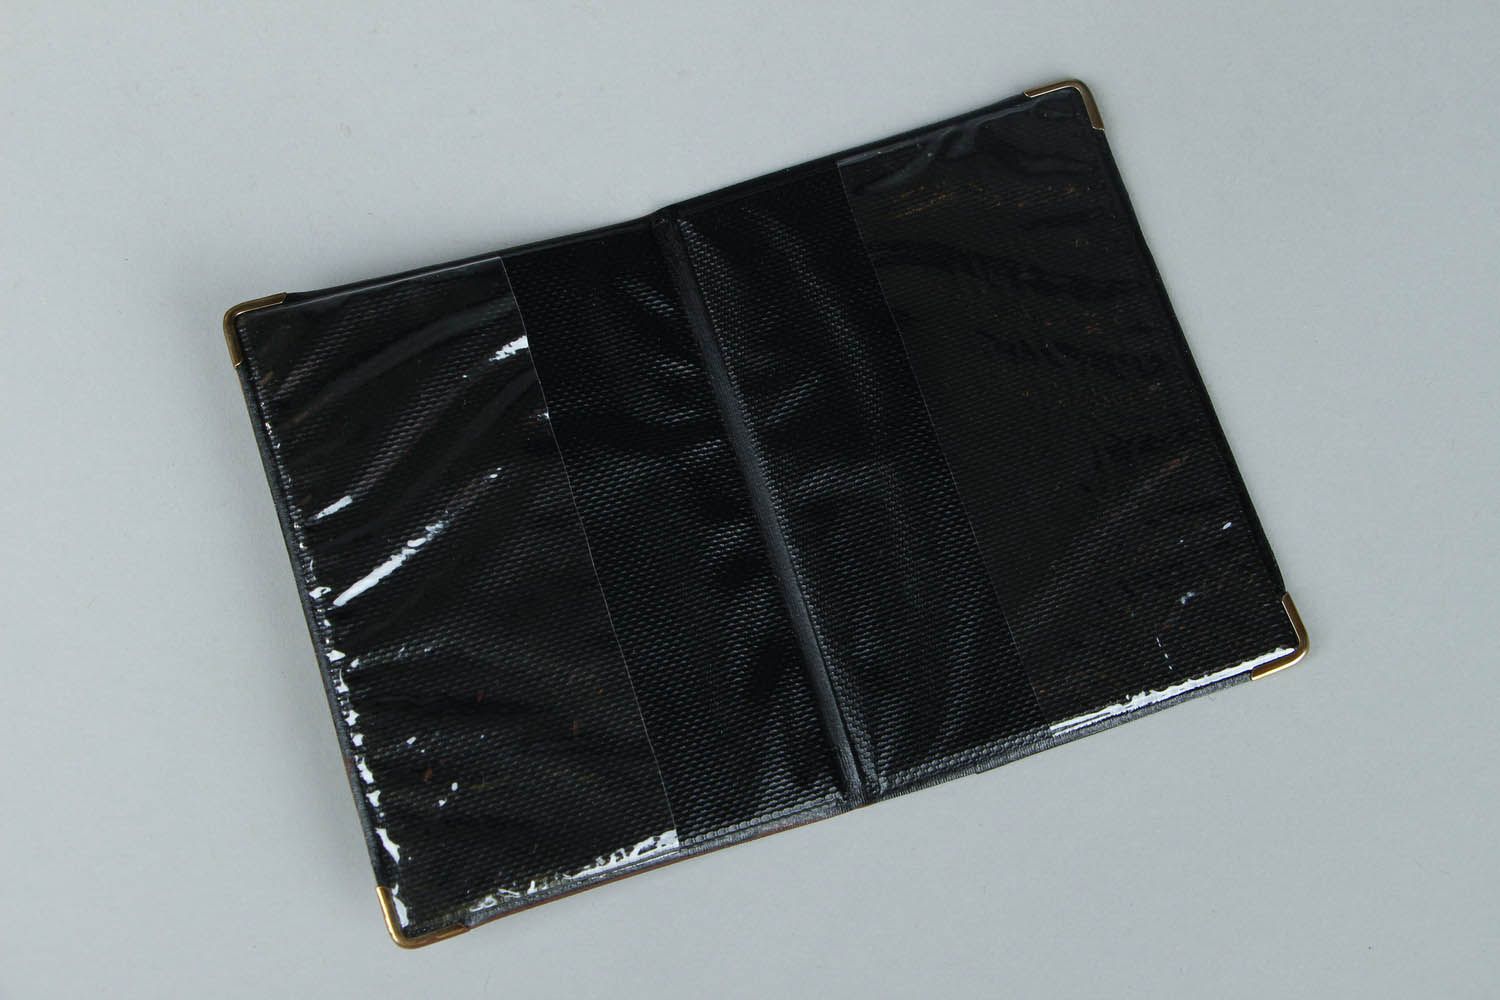 Porte passeport en simili-cuir fait main photo 2